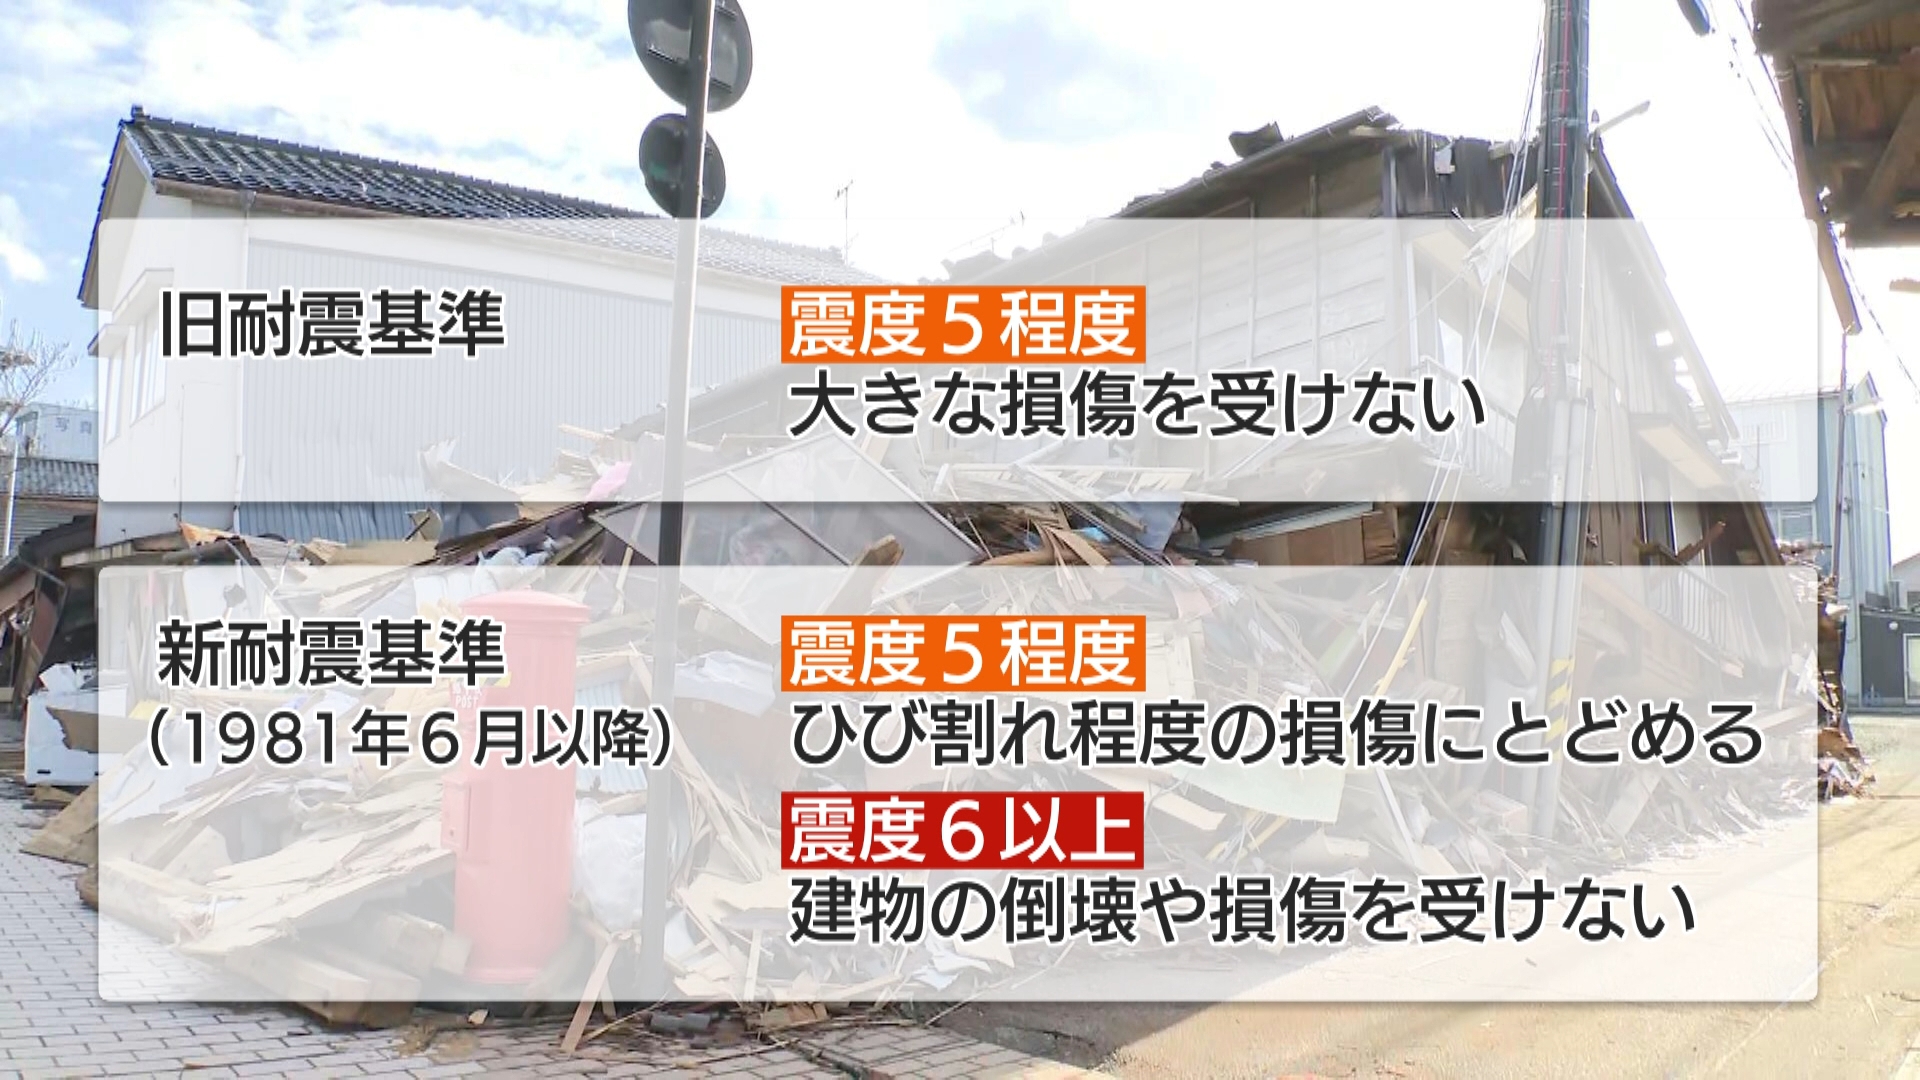 発生から1カ月余りの能登半島地震。多くの被害が出た石川県輪島市では、家屋の倒壊が相次ぎました。専門家は「耐震不足」が1つの要因だと指摘し、都内でも対策の必要があると、警鐘を鳴らしています。